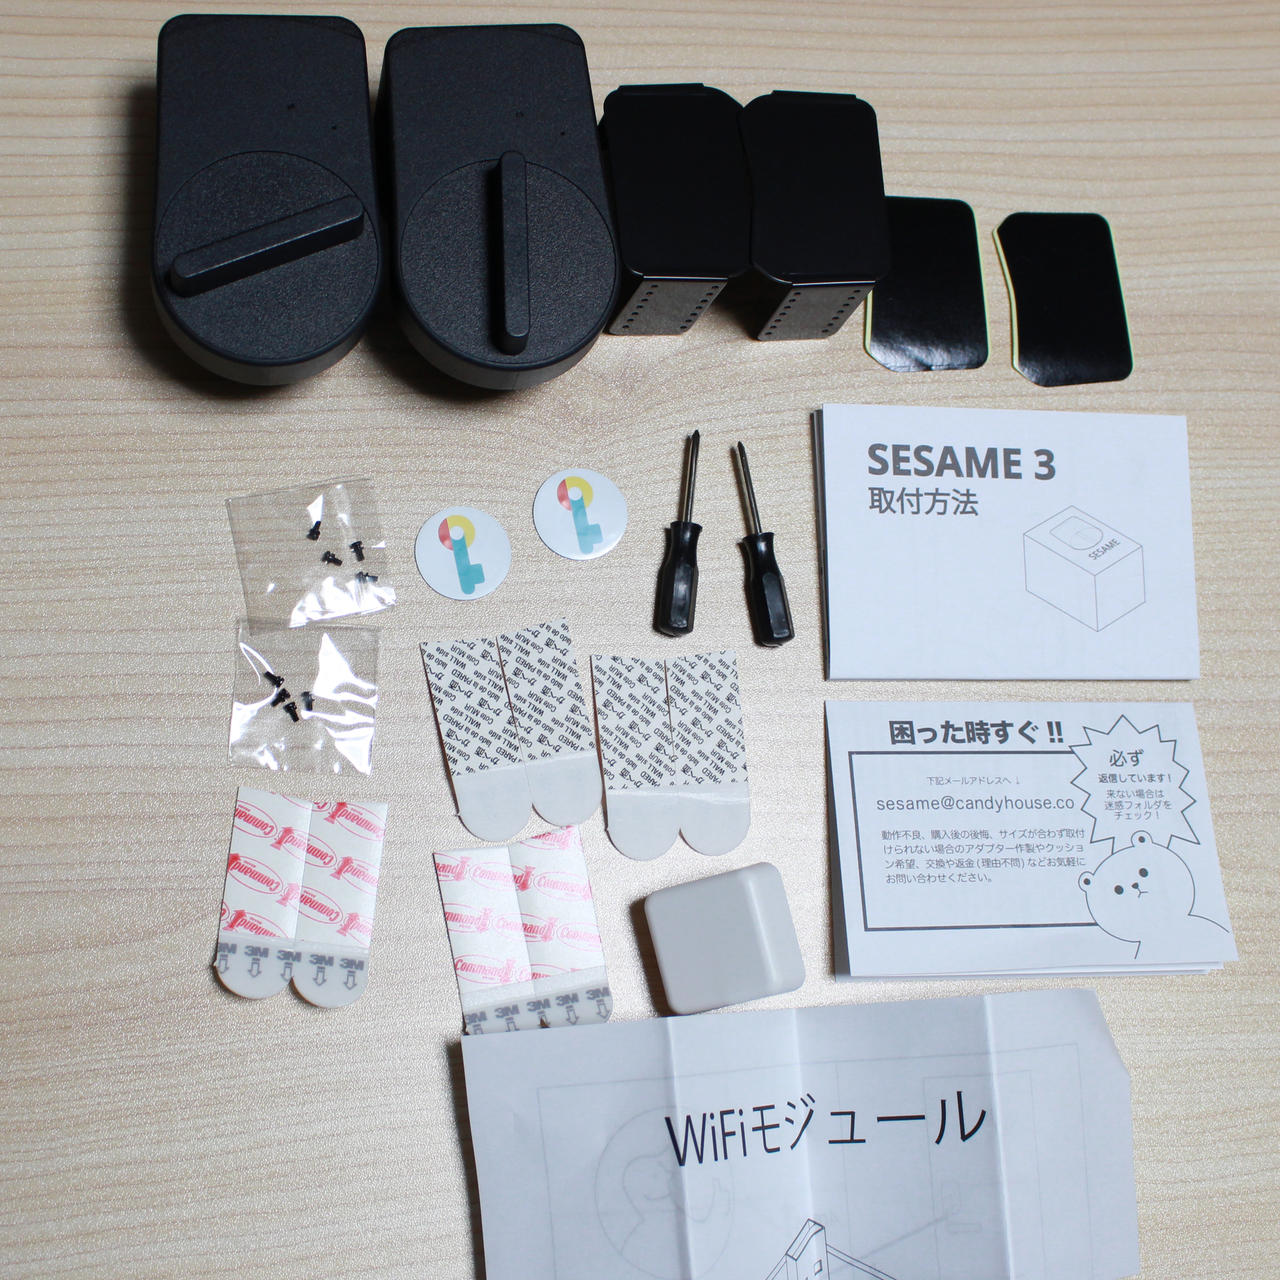 SESAME3+WiFiモジュール 内容物一式